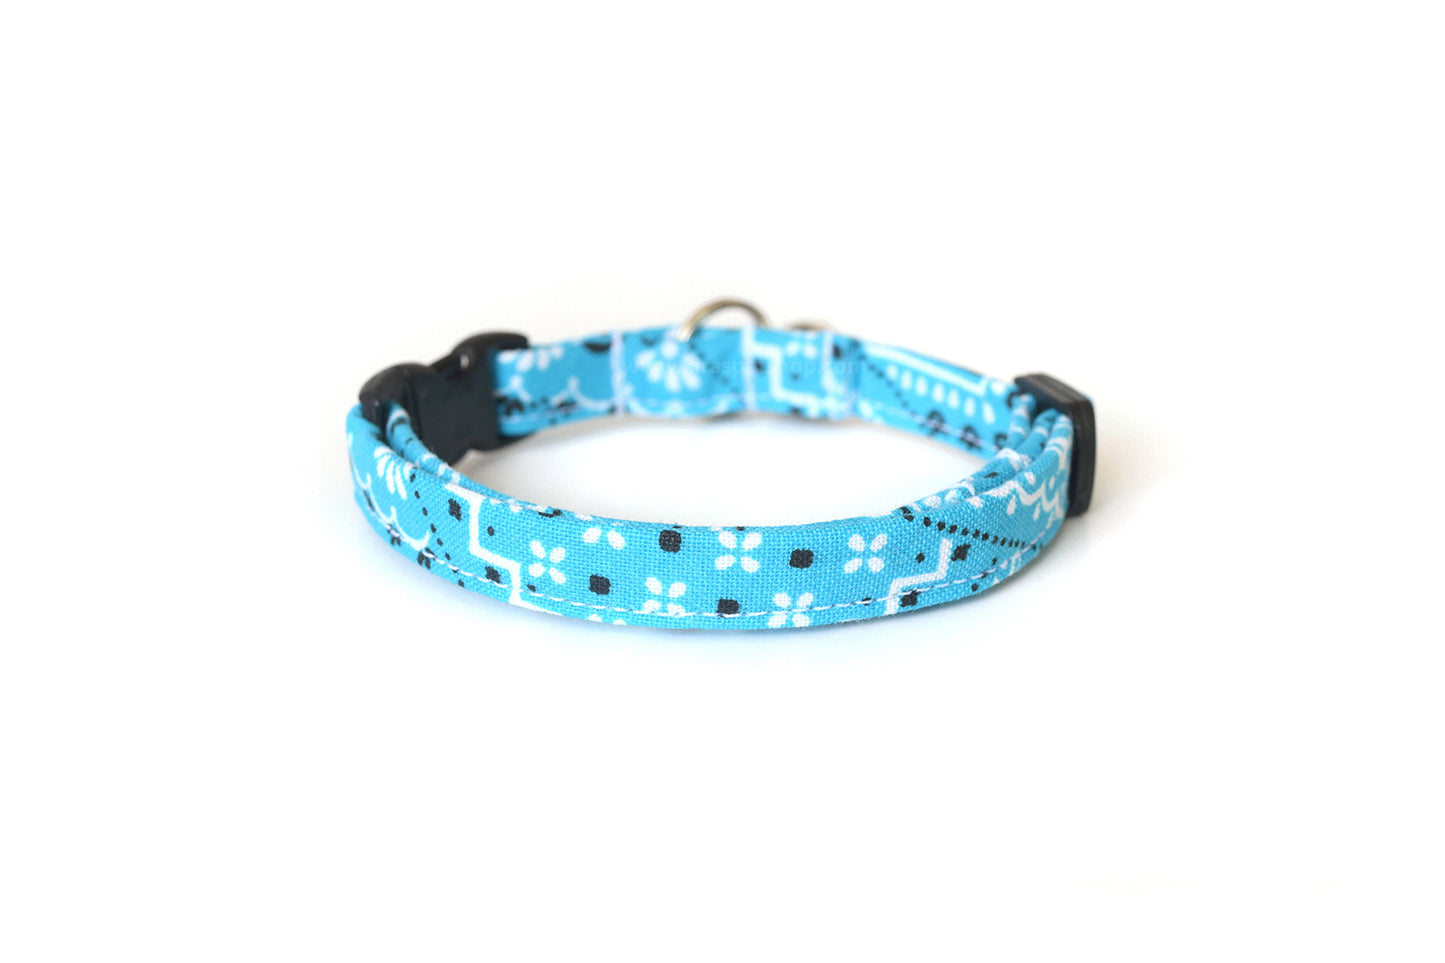 Sky Blue Cat Collar - Blue Paisley Bandana Print Breakaway Cat Collar - Handmade by Kira's Pet Shop